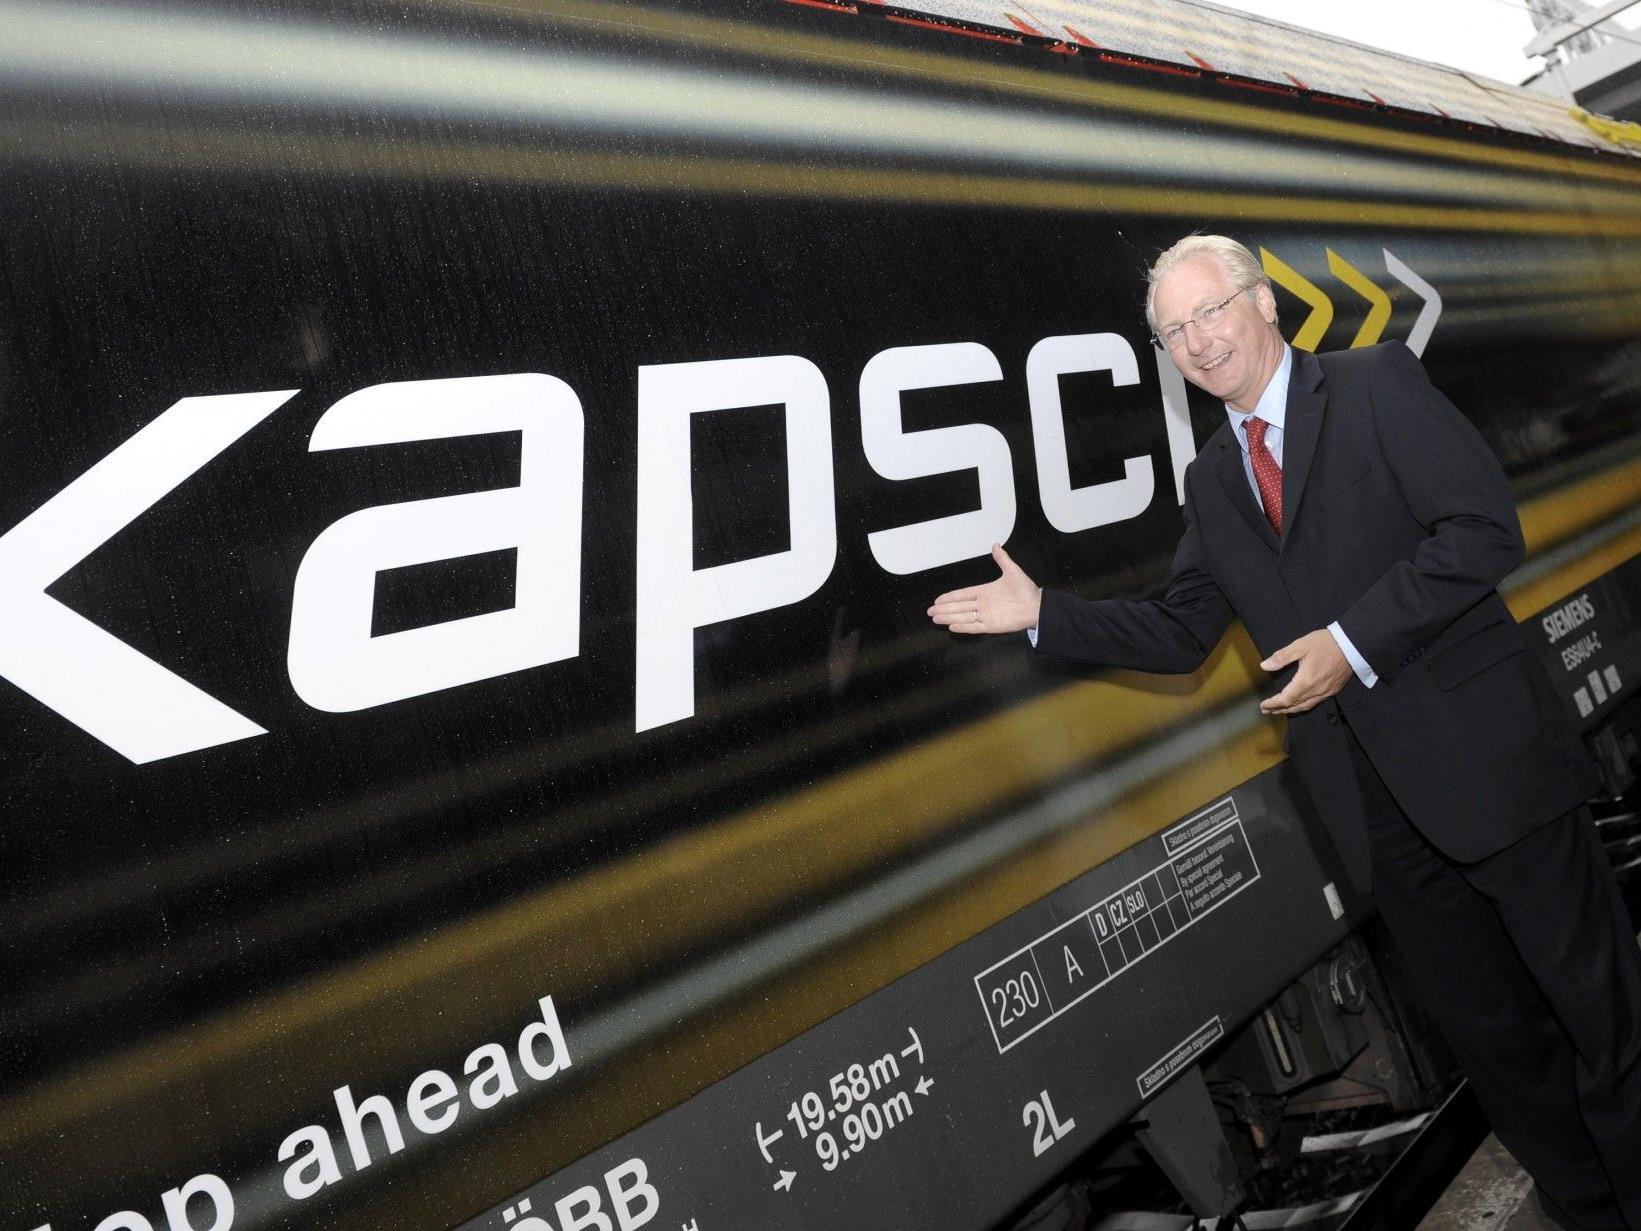 Nach Projekten wie der Lieferung von Systemen für die Bahnkommunikation will die Kapsch-Gruppe nun ins Geschäft mit "intelligenten Stromnetzen" einsteigen.